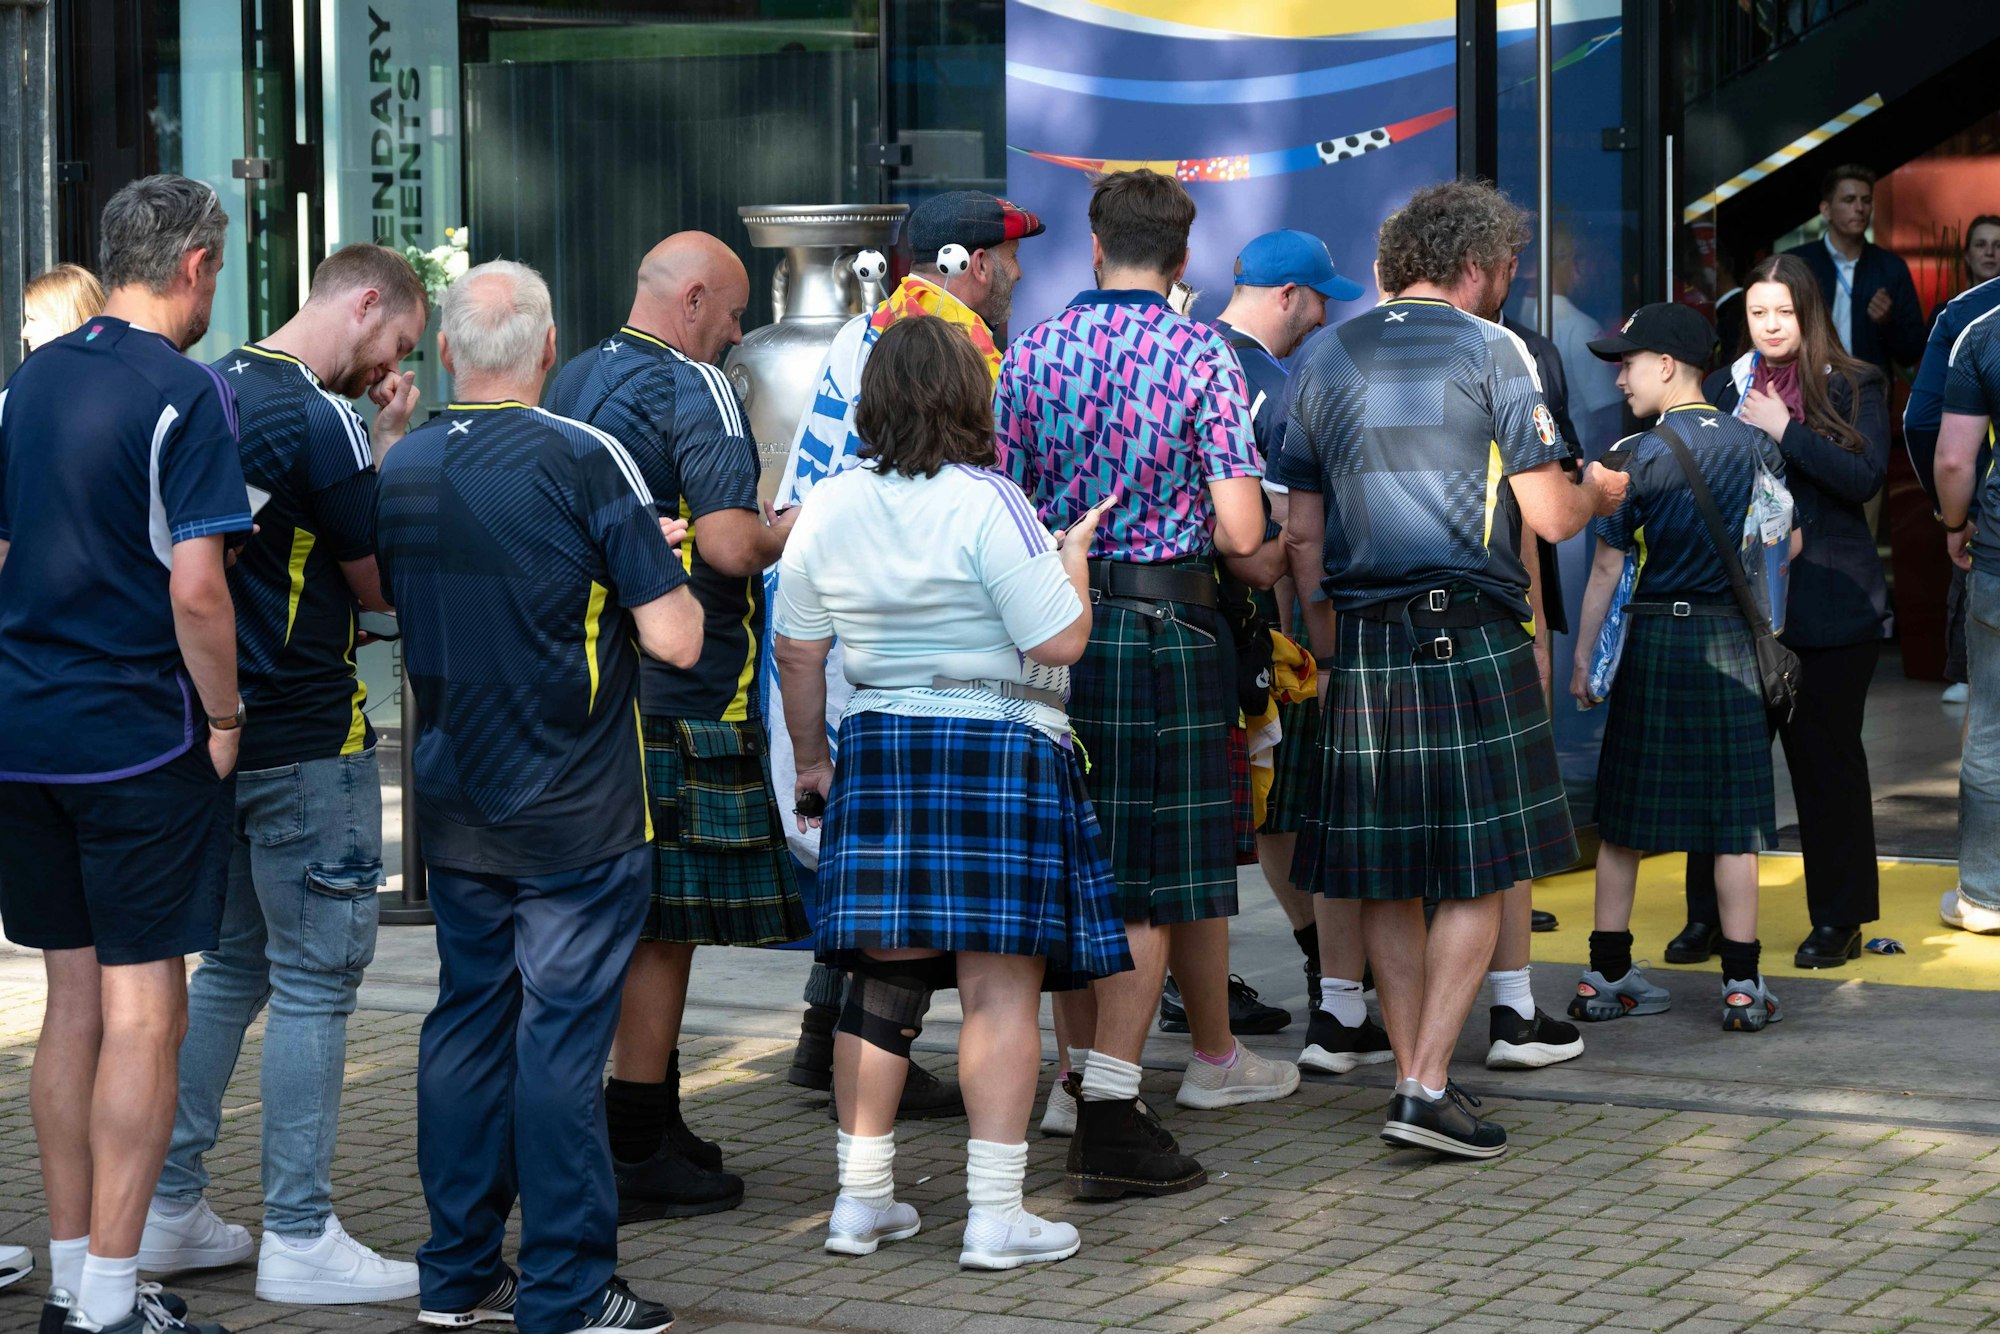 Schottland-Fans vor dem Eingang im Kölner Stadion.